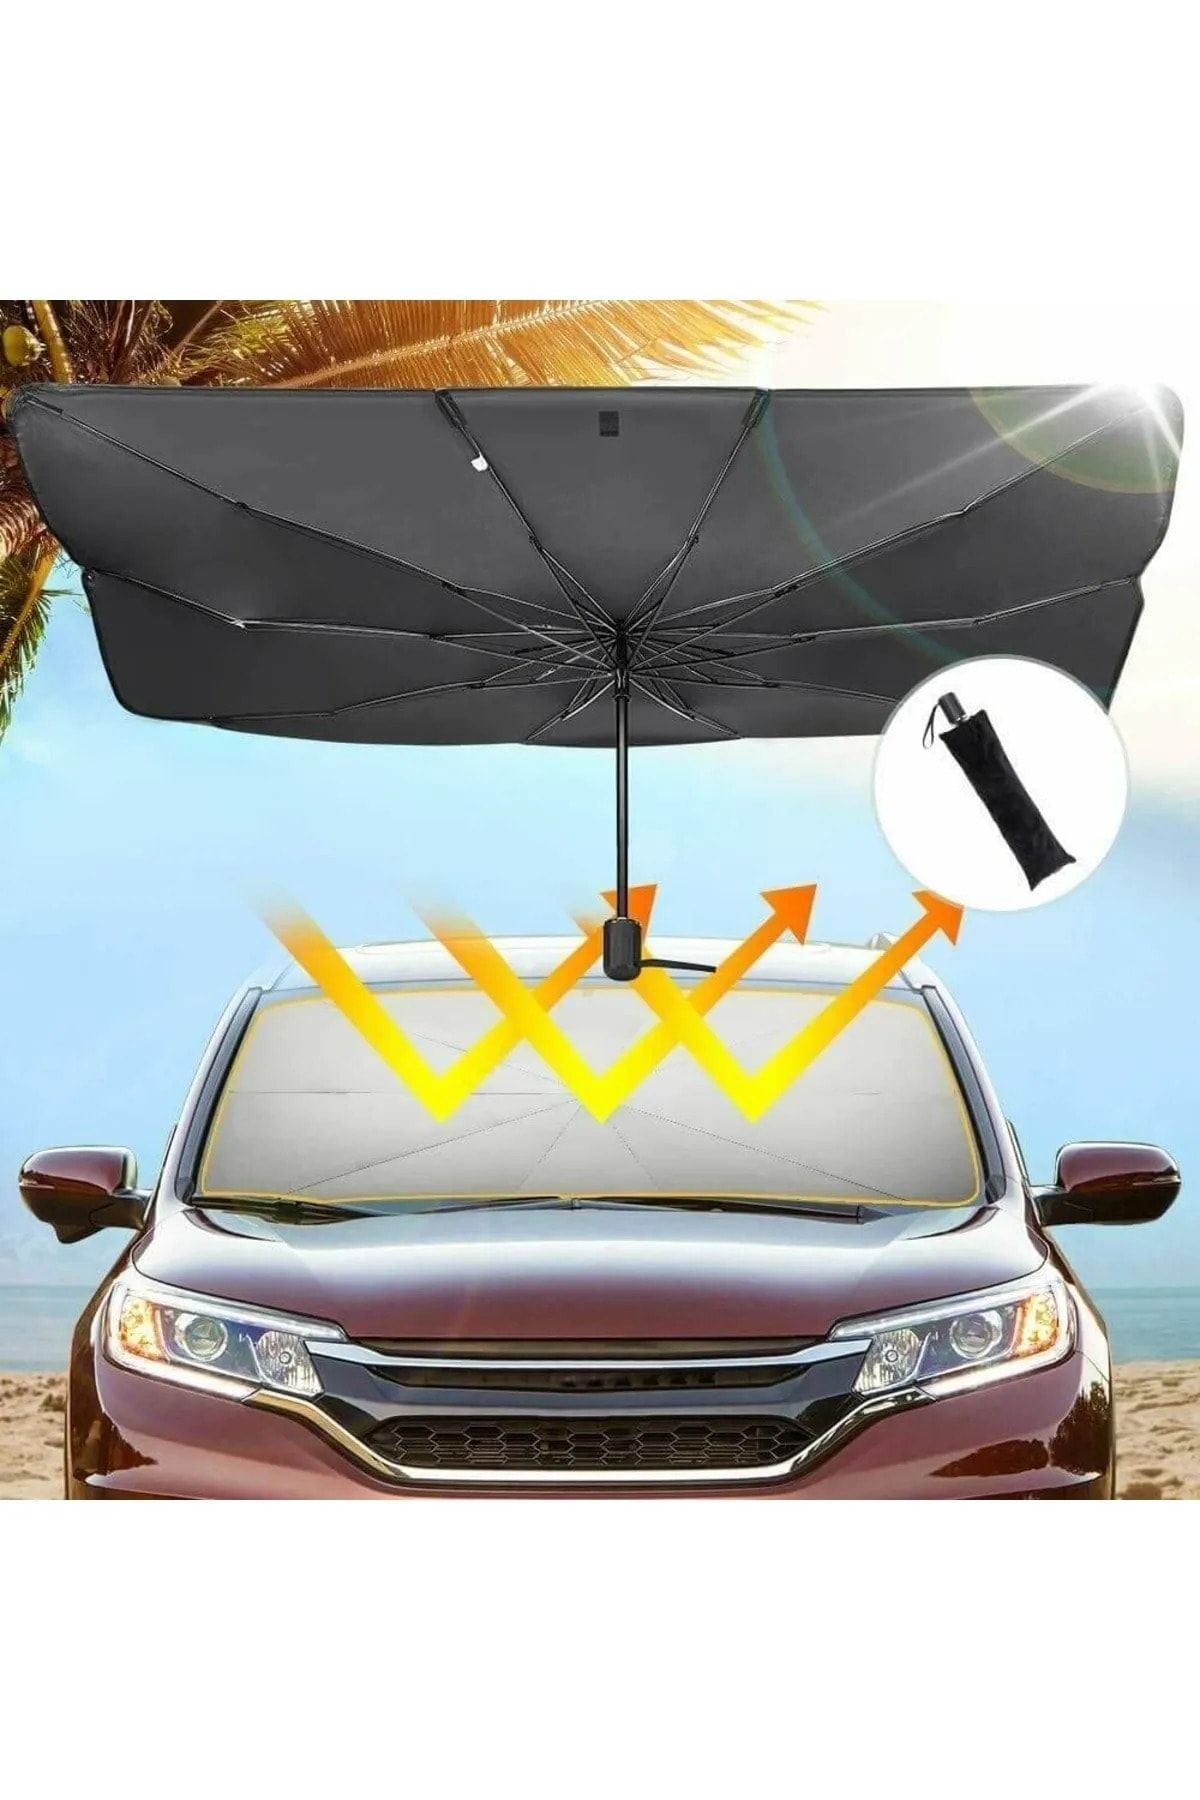 Universal Hino Mega Araba Ön Cam Güneşlik Katlanabilir Güneşlik Şemsiye Ön Cam Gölgelik